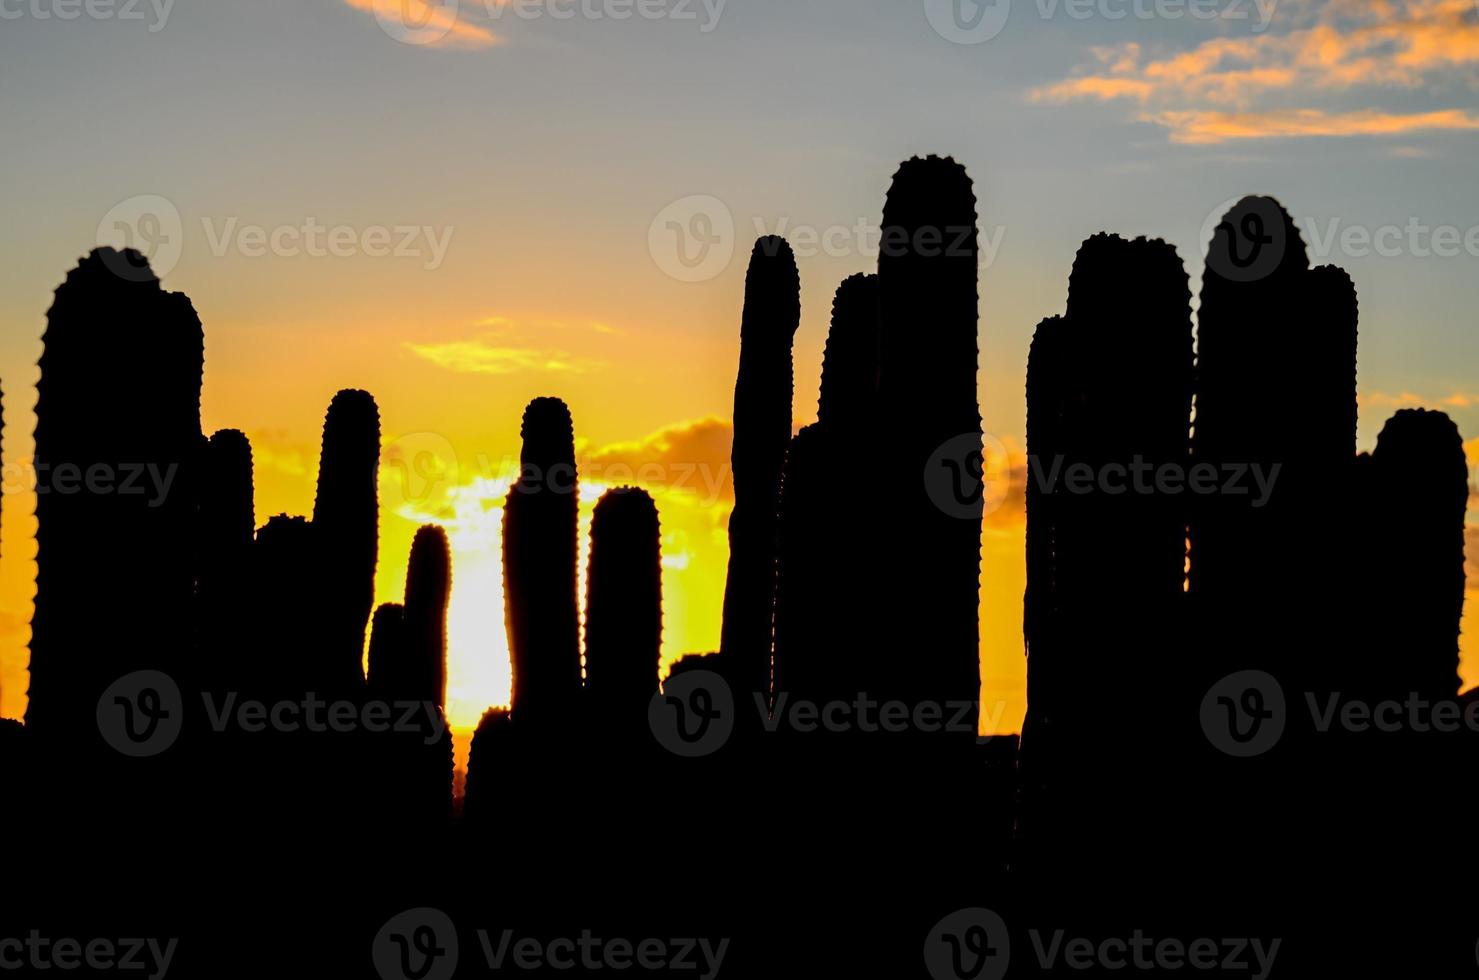 Cacti in the desert photo